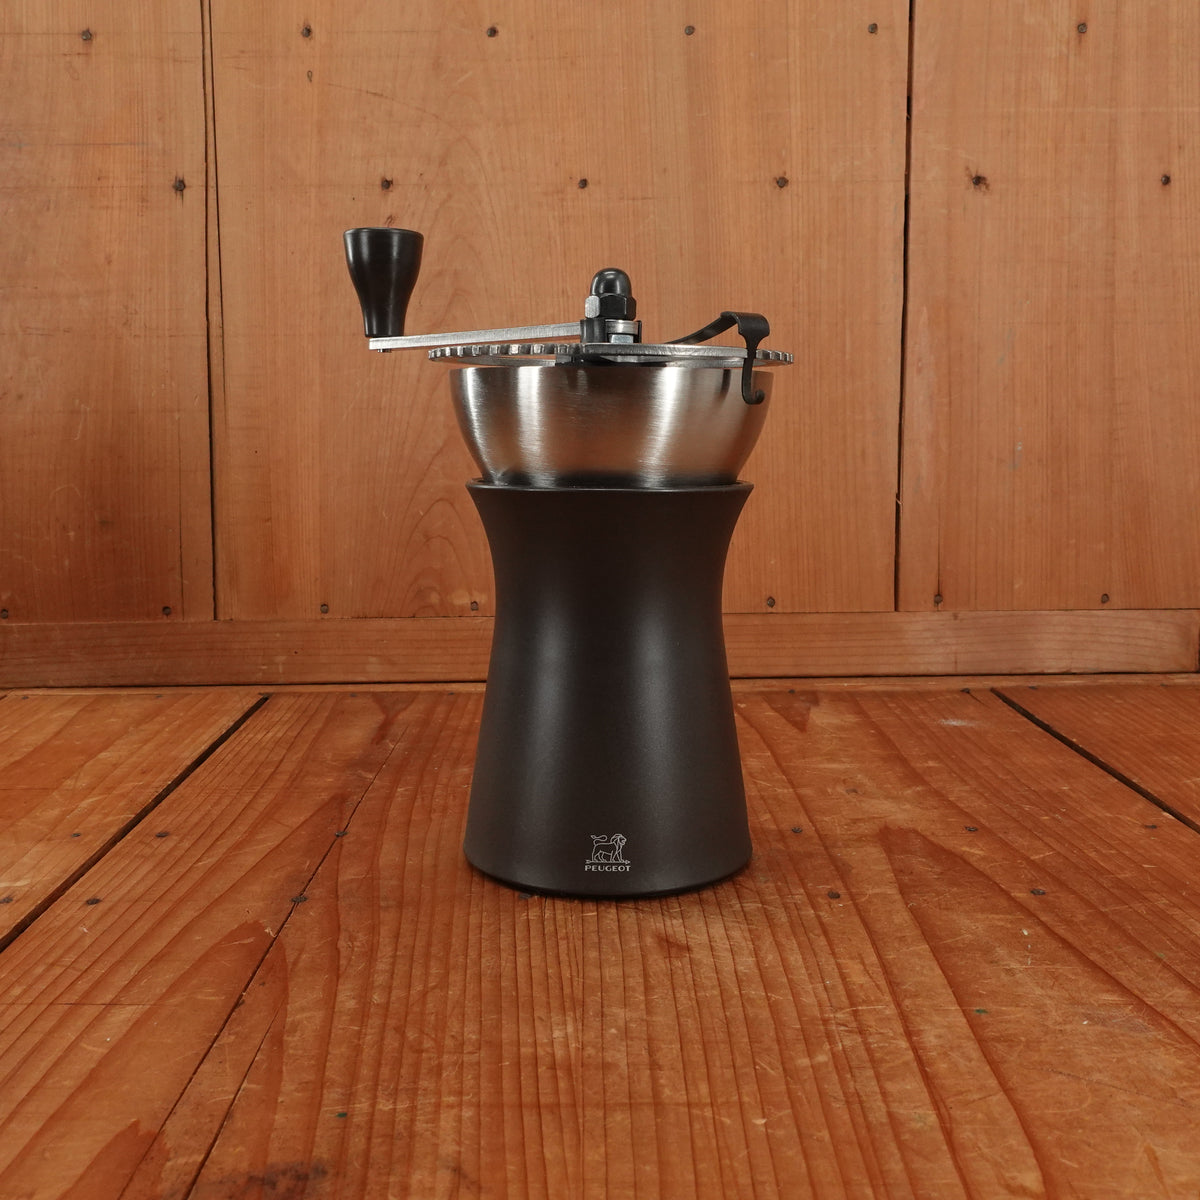 Peugeot Kronos Manual Coffee Grinder 19cm